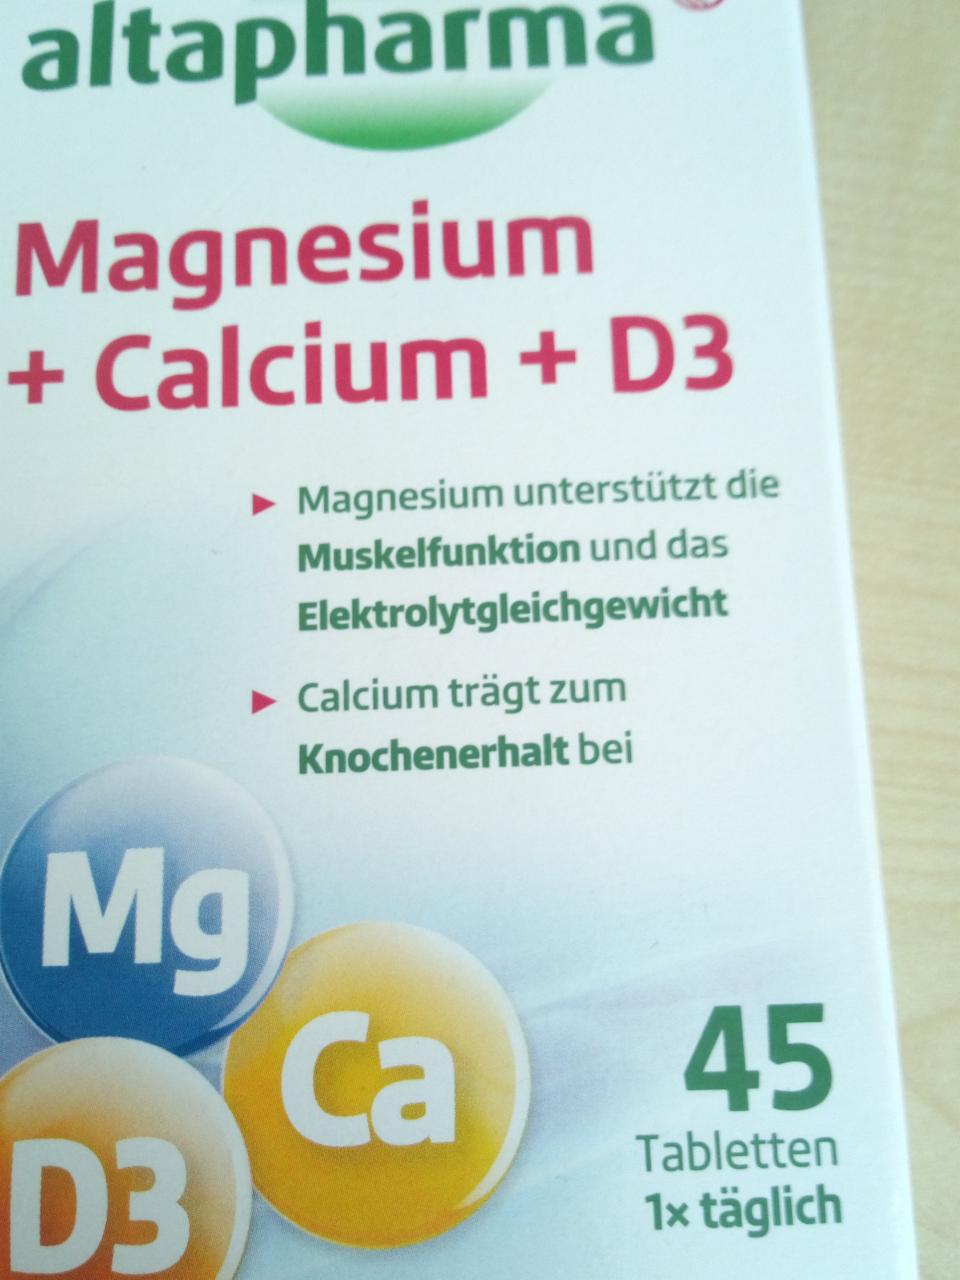 Fotografie - Magnesium + Calcium + D3 Altapharma